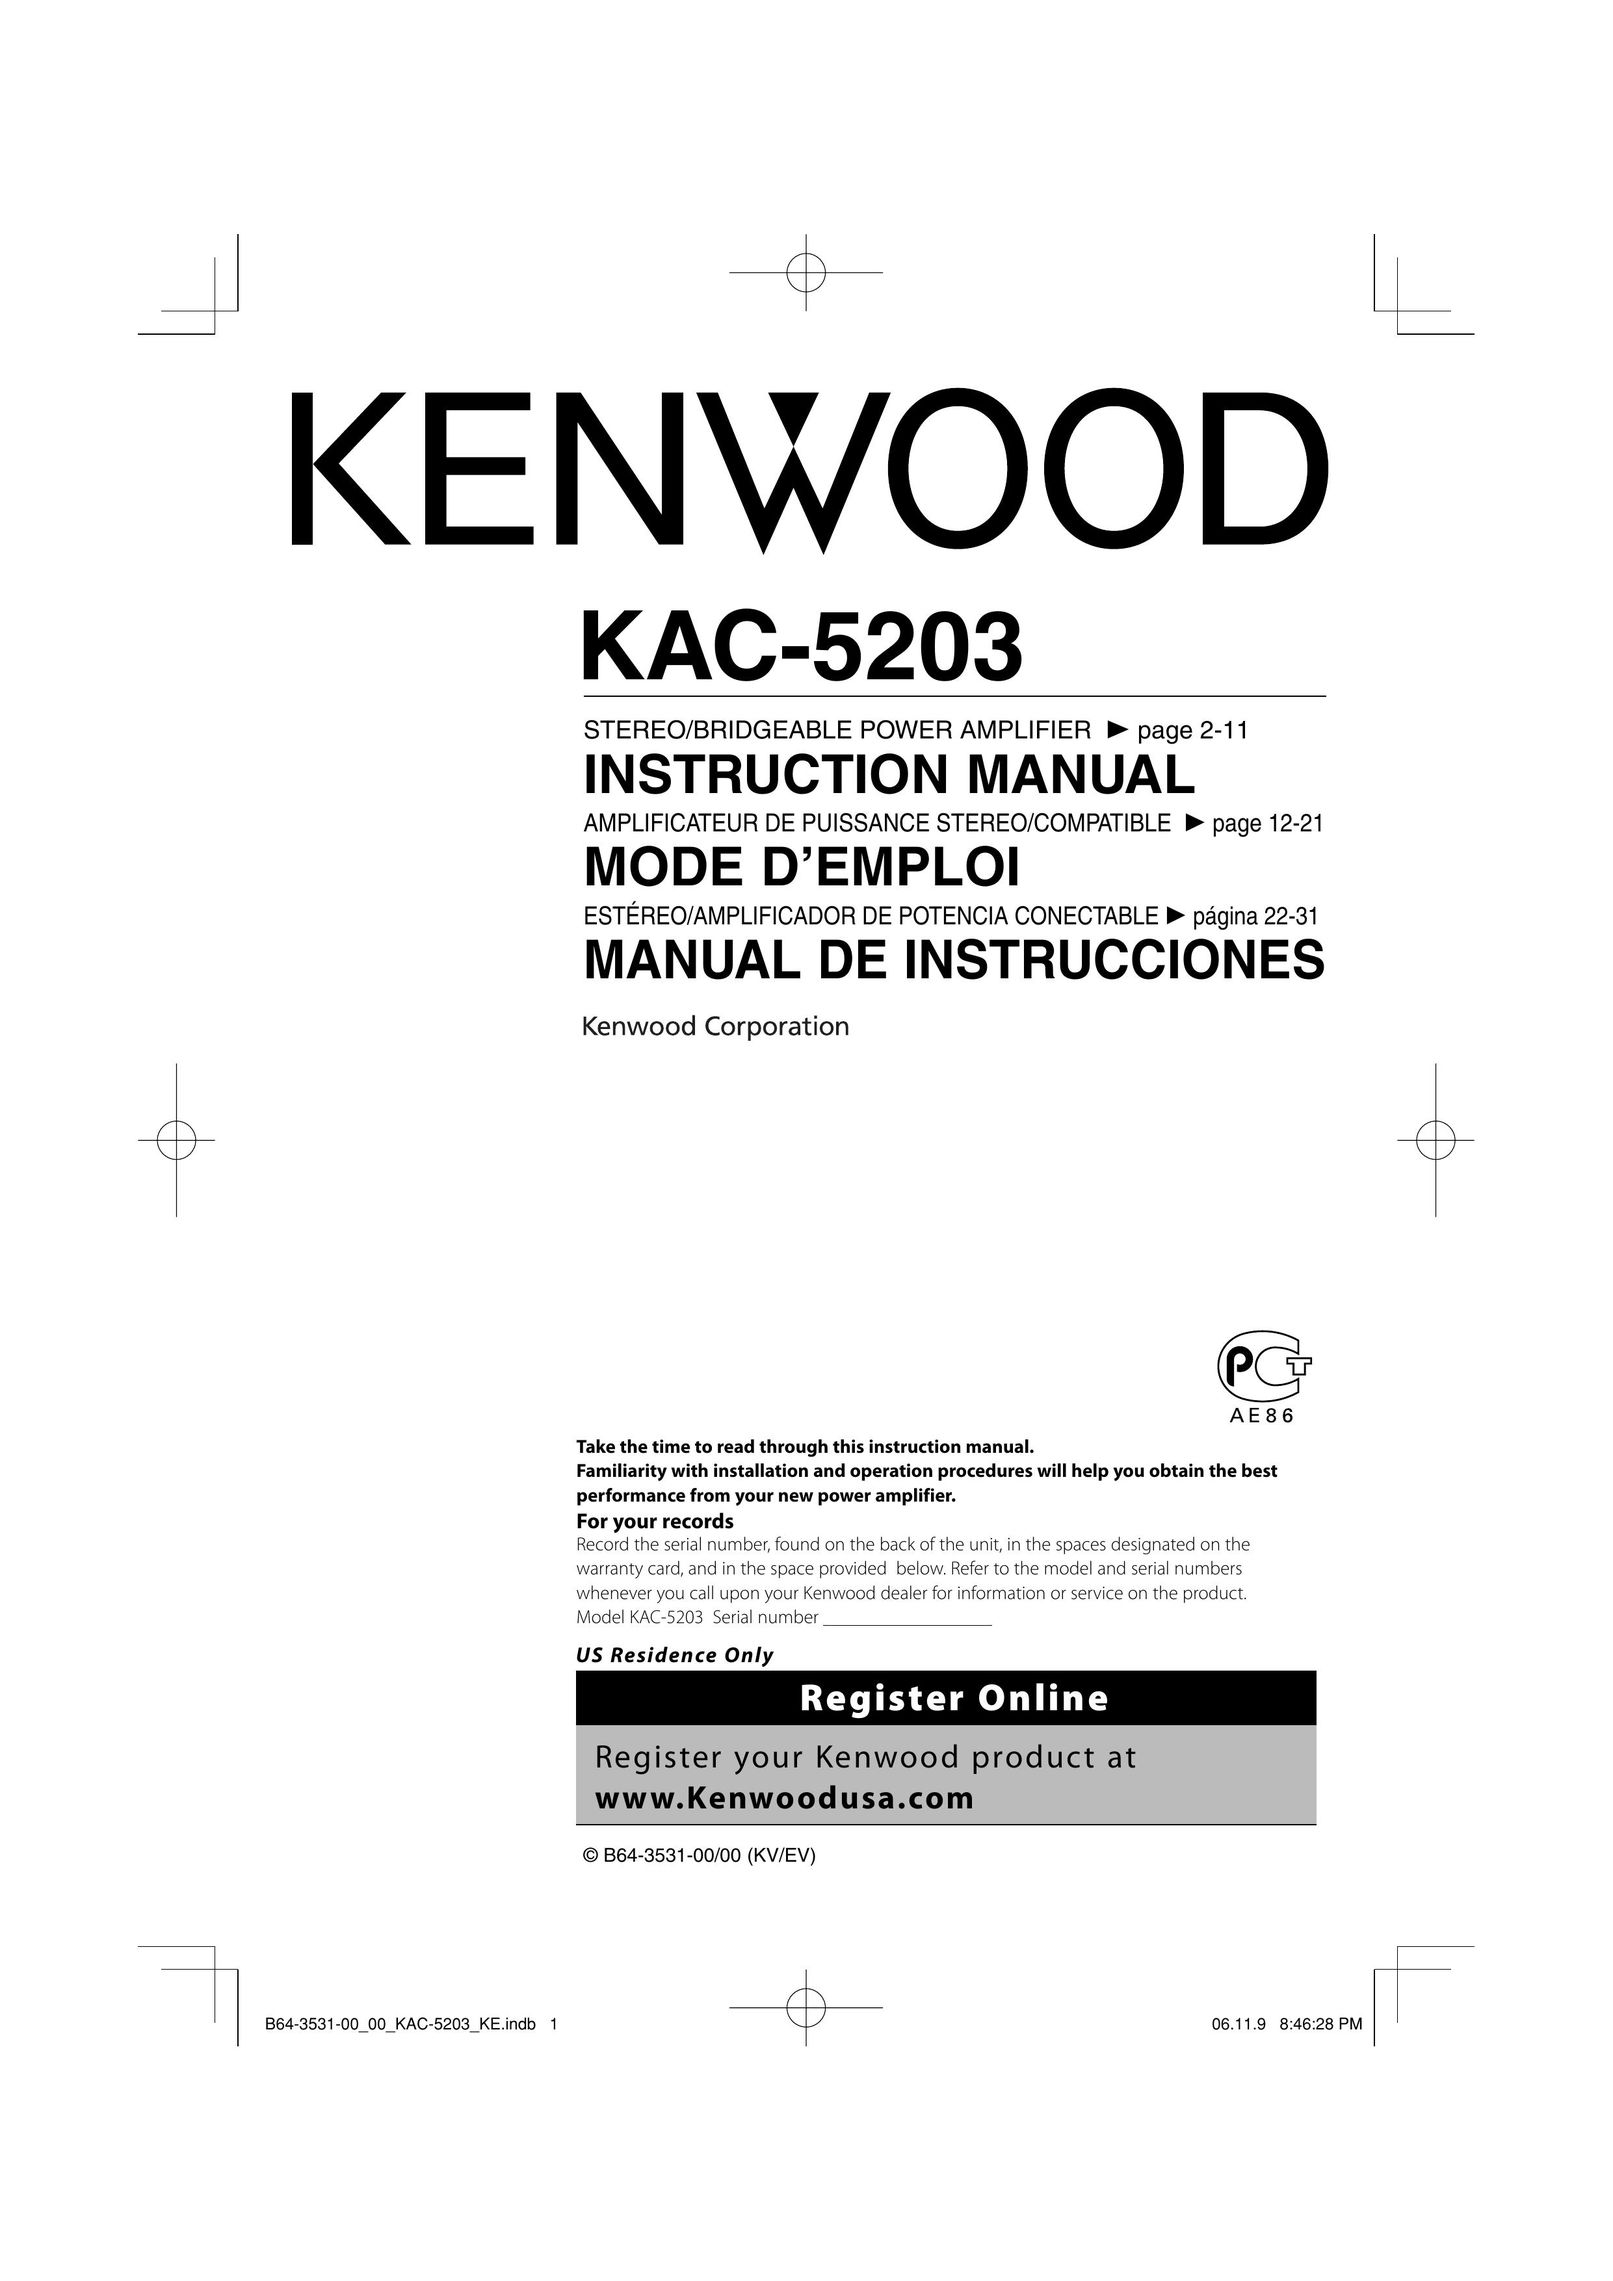 Kenwood KAC-5203 Stereo Amplifier User Manual